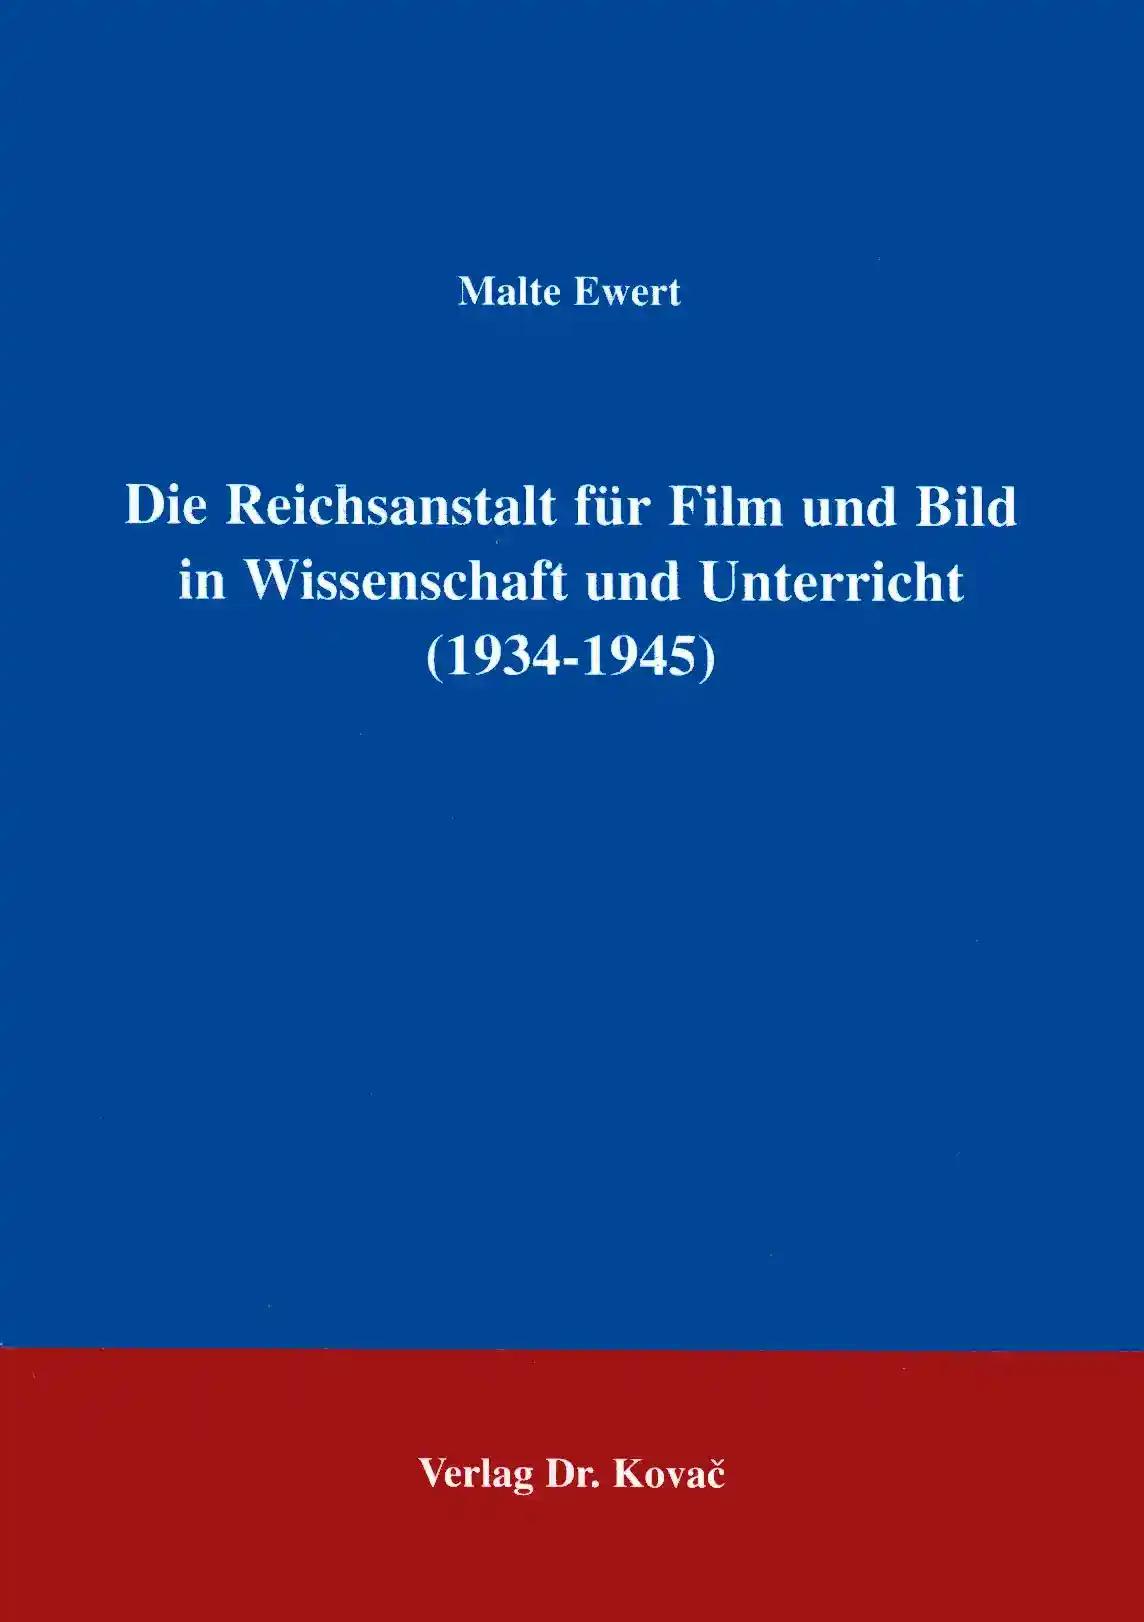 Die Reichsanstalt für Film und Bild in Wissenschaft und Unterricht (1934 - 1945) .